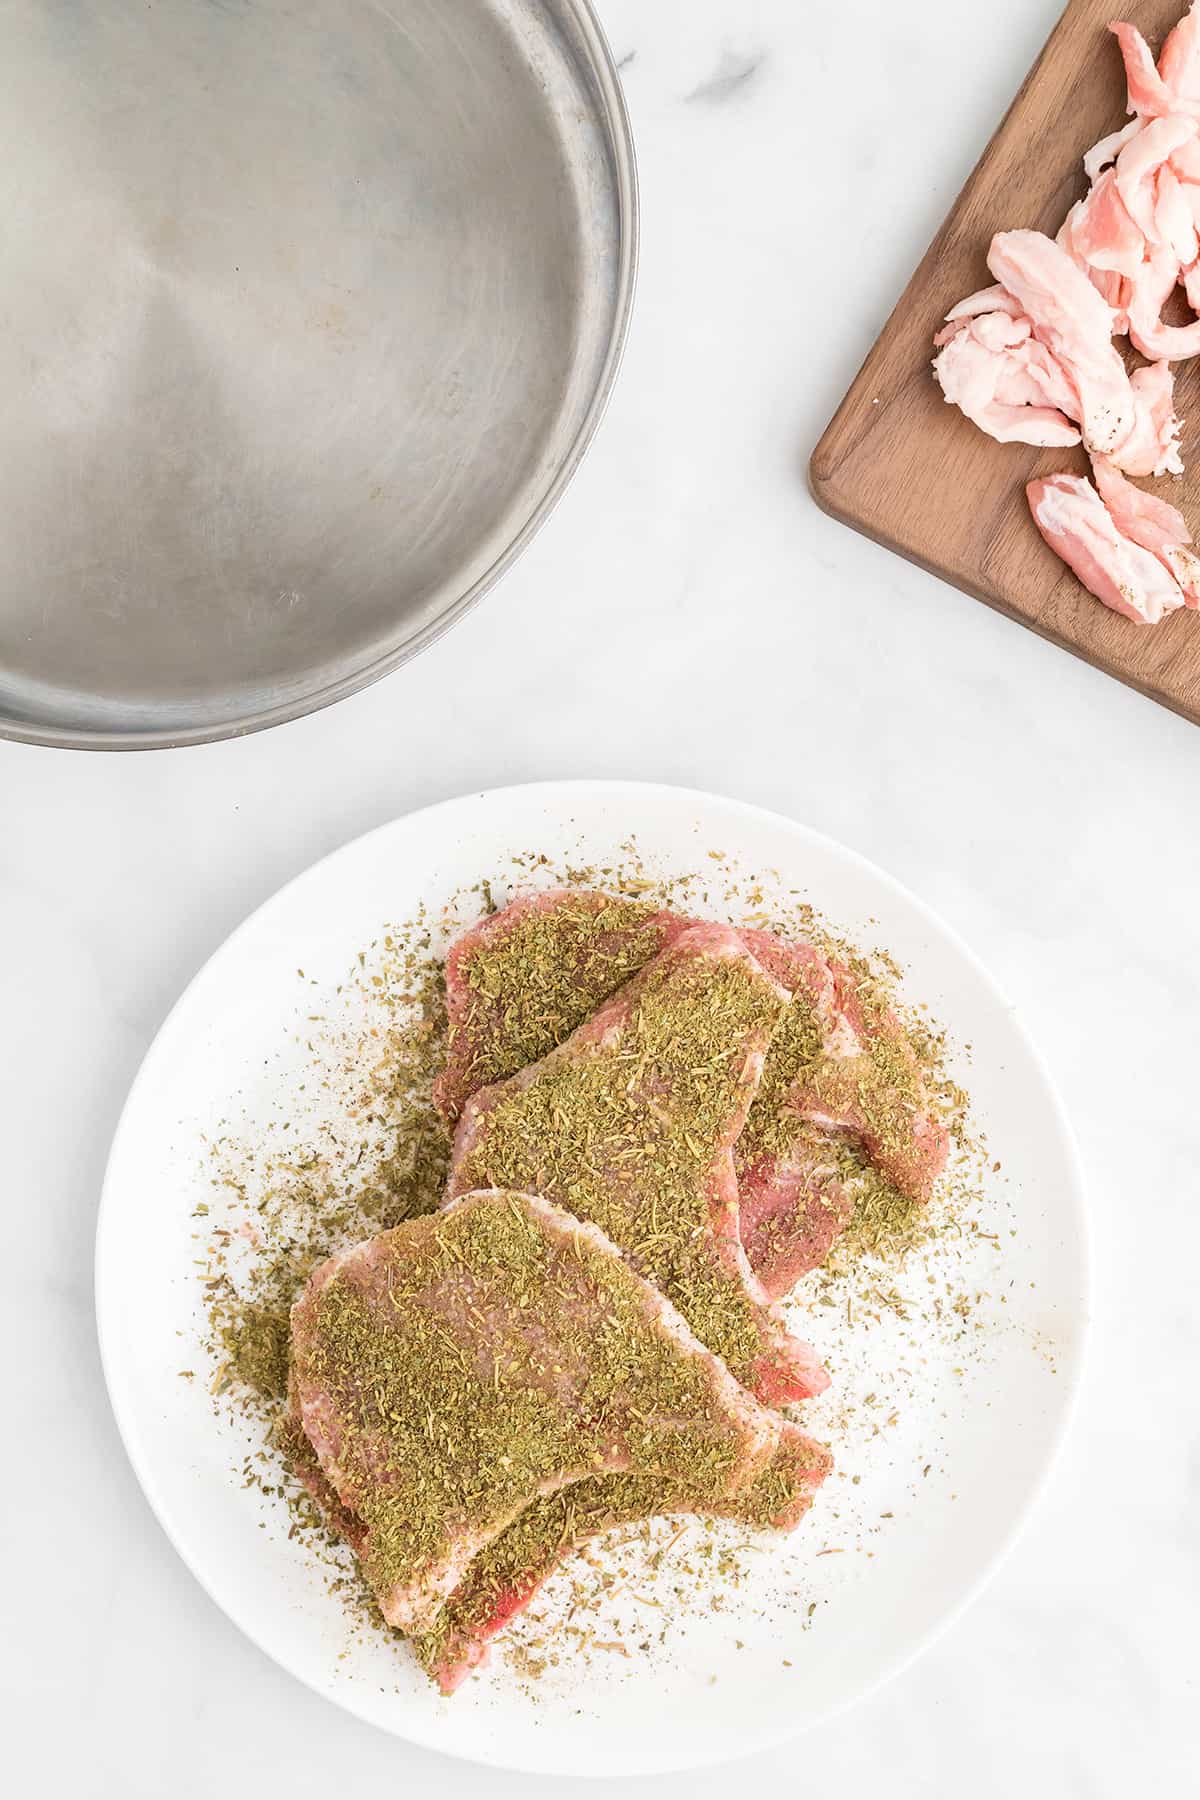 Trimmed pork chops sprinkled with seasonings.